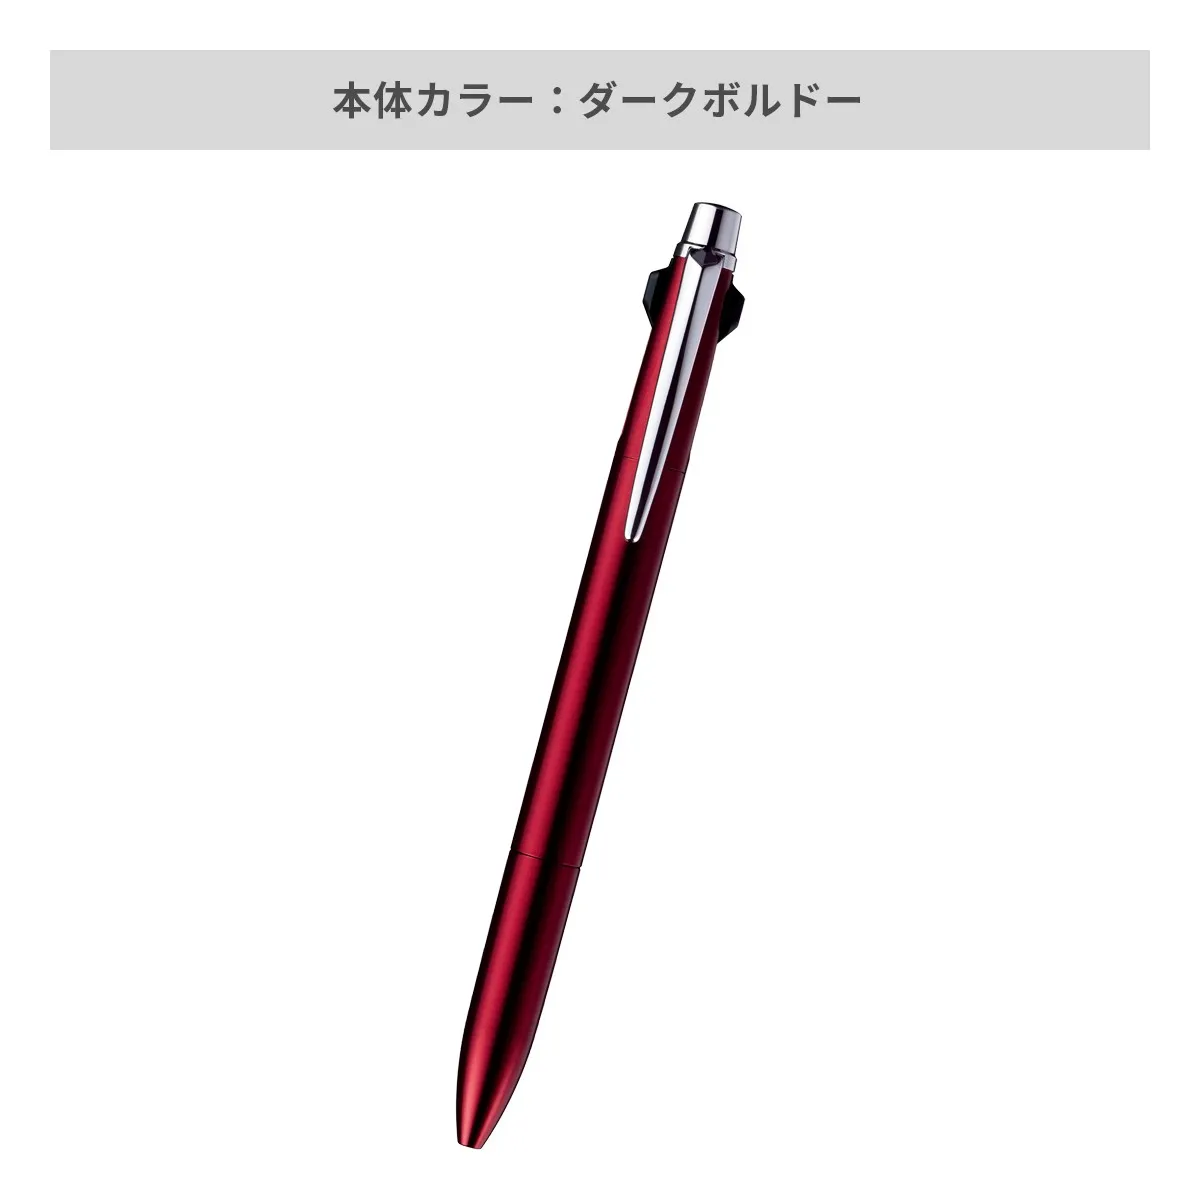 【短納期】三菱鉛筆 ジェットストリーム プライム 多機能ペン 2&1 0.5mm【多機能ペン / レーザー彫刻】 画像5